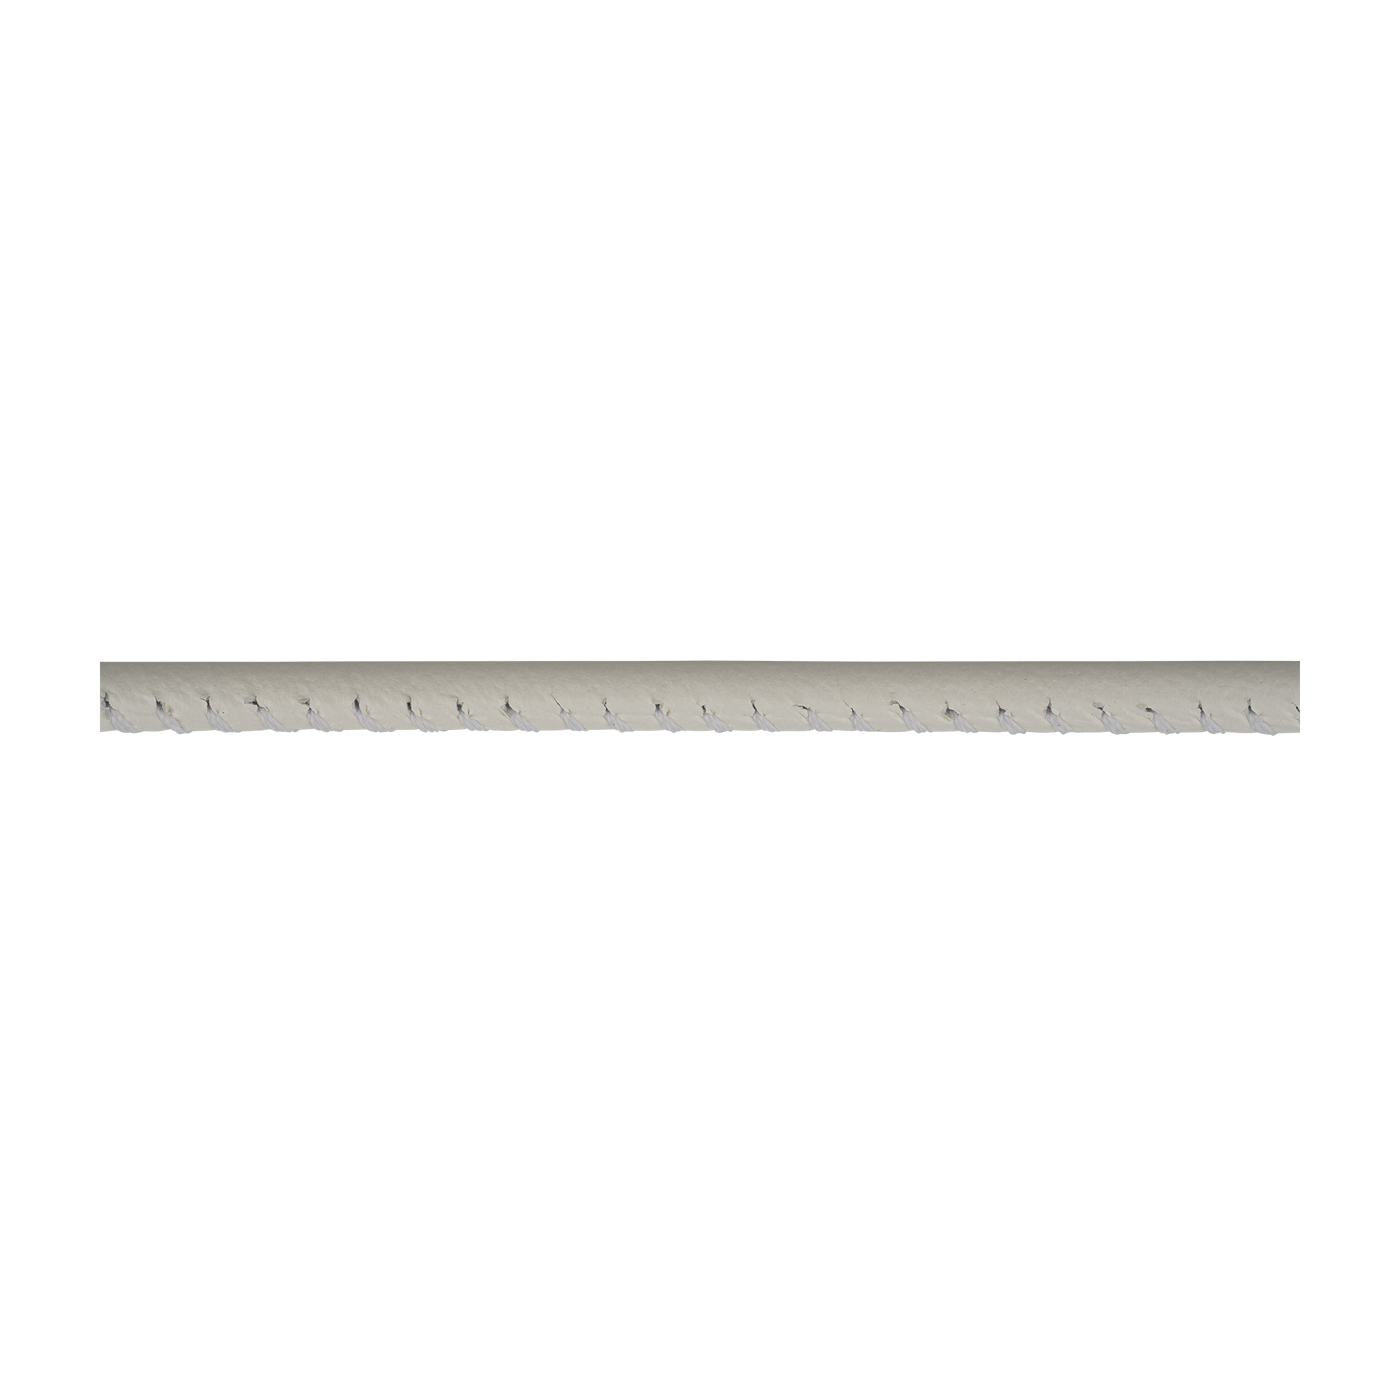 Lederband, weiß, ø 5 mm, aus Kalbsleder - 1 m